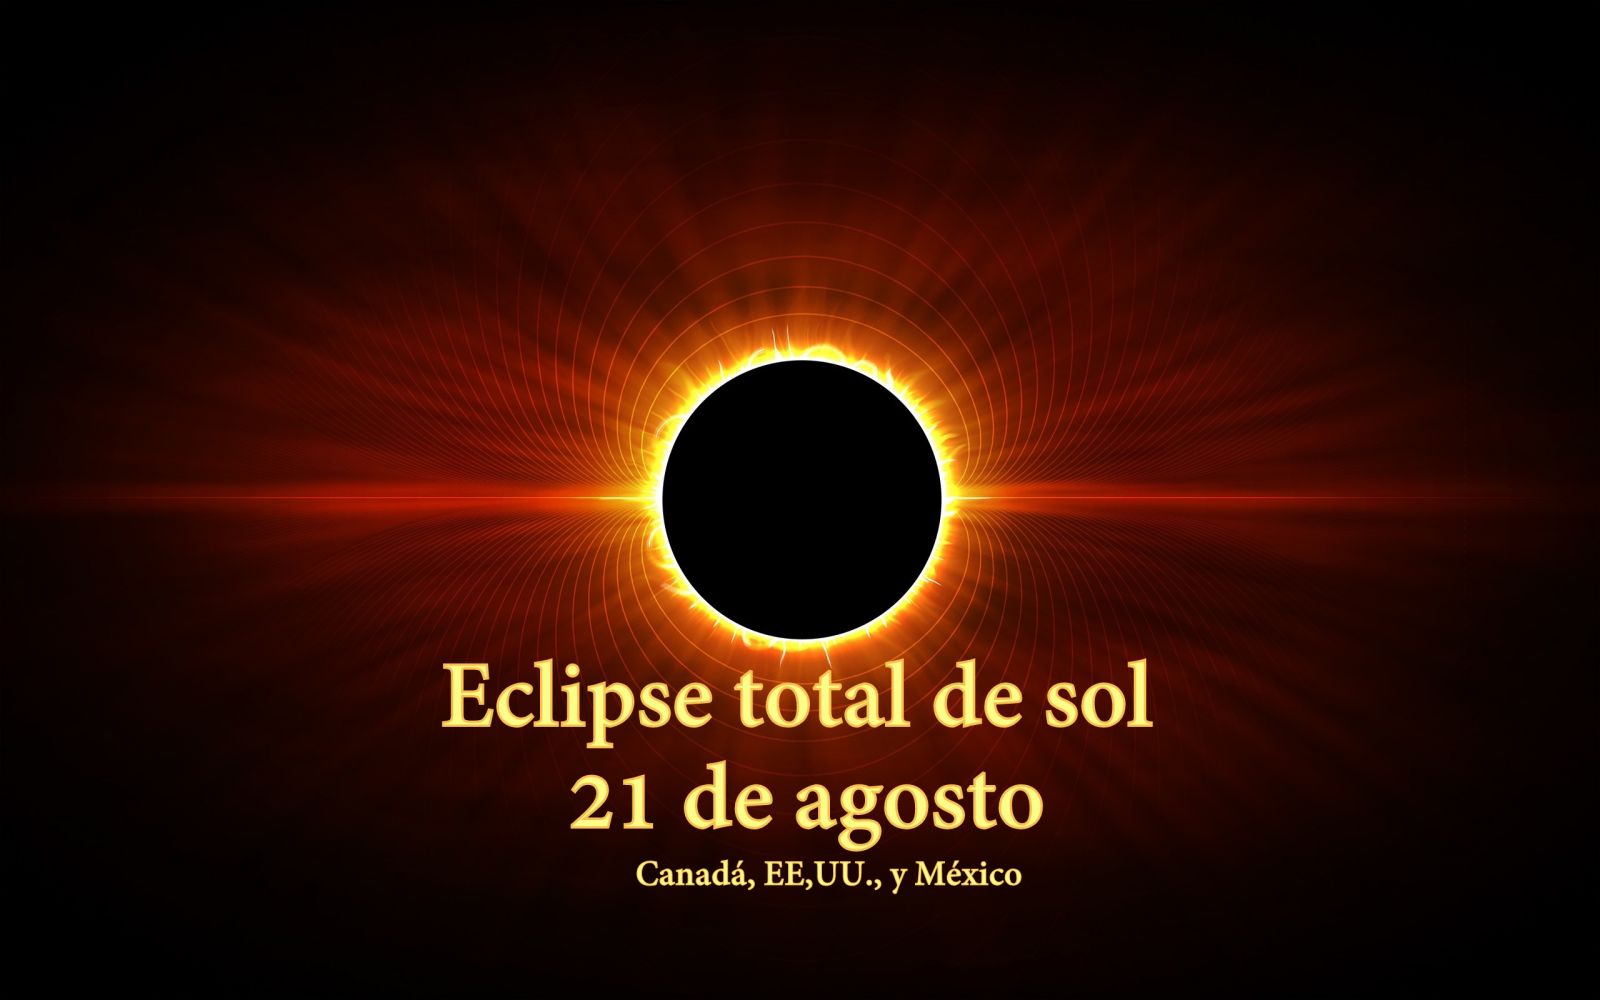 Canadá se prepara para ver el eclipse de sol del 21 de agosto